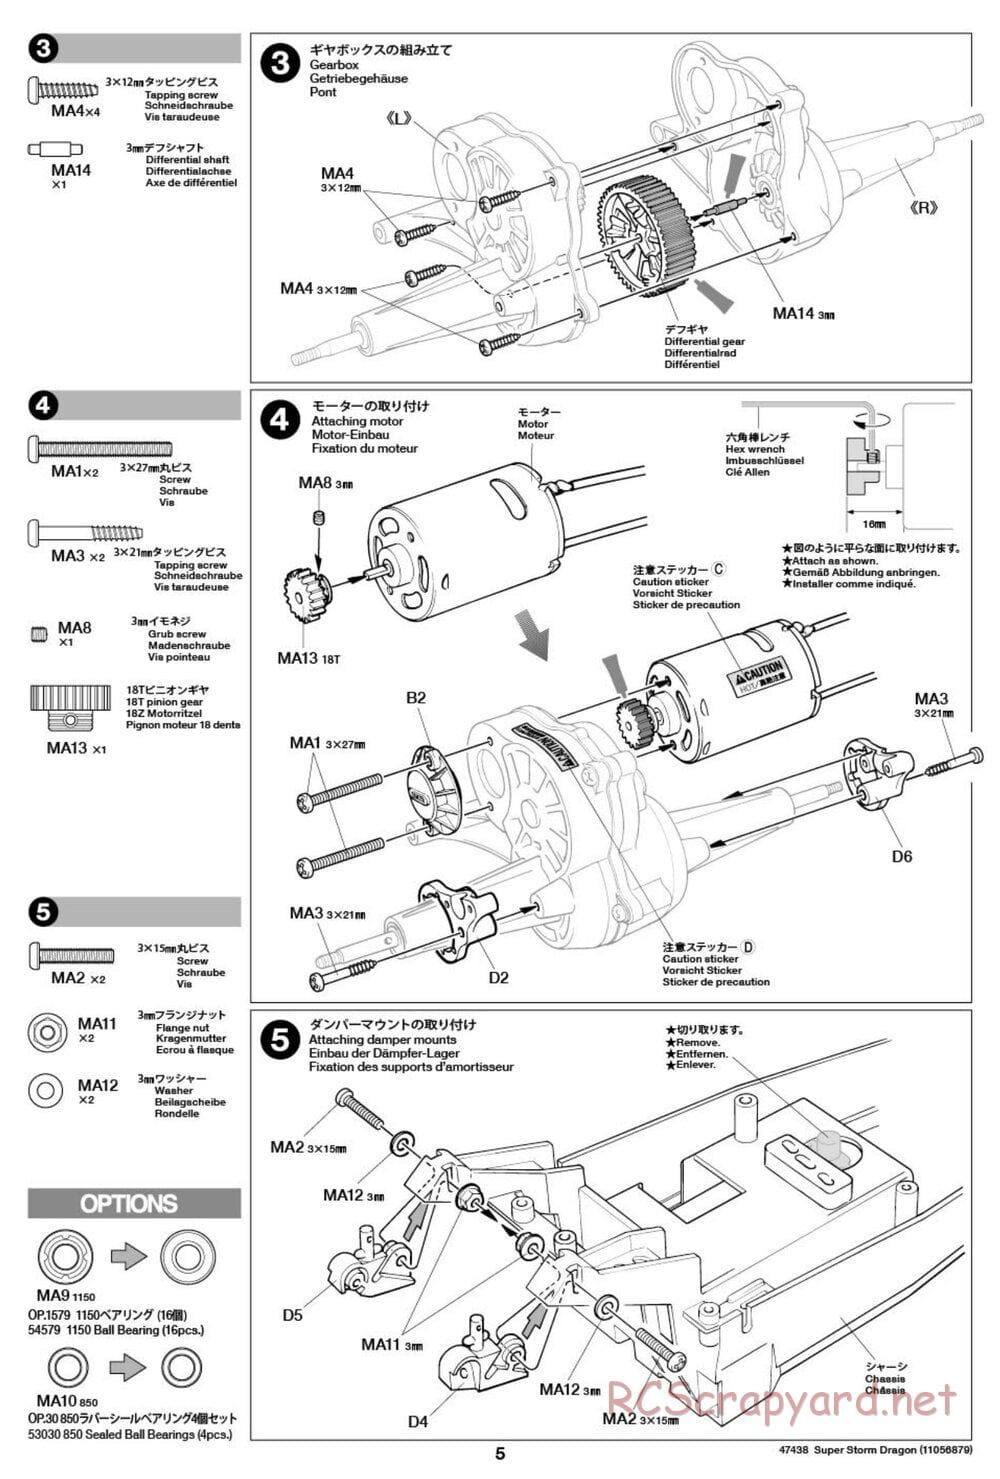 Tamiya - Super Storm Dragon Chassis - Manual - Page 5